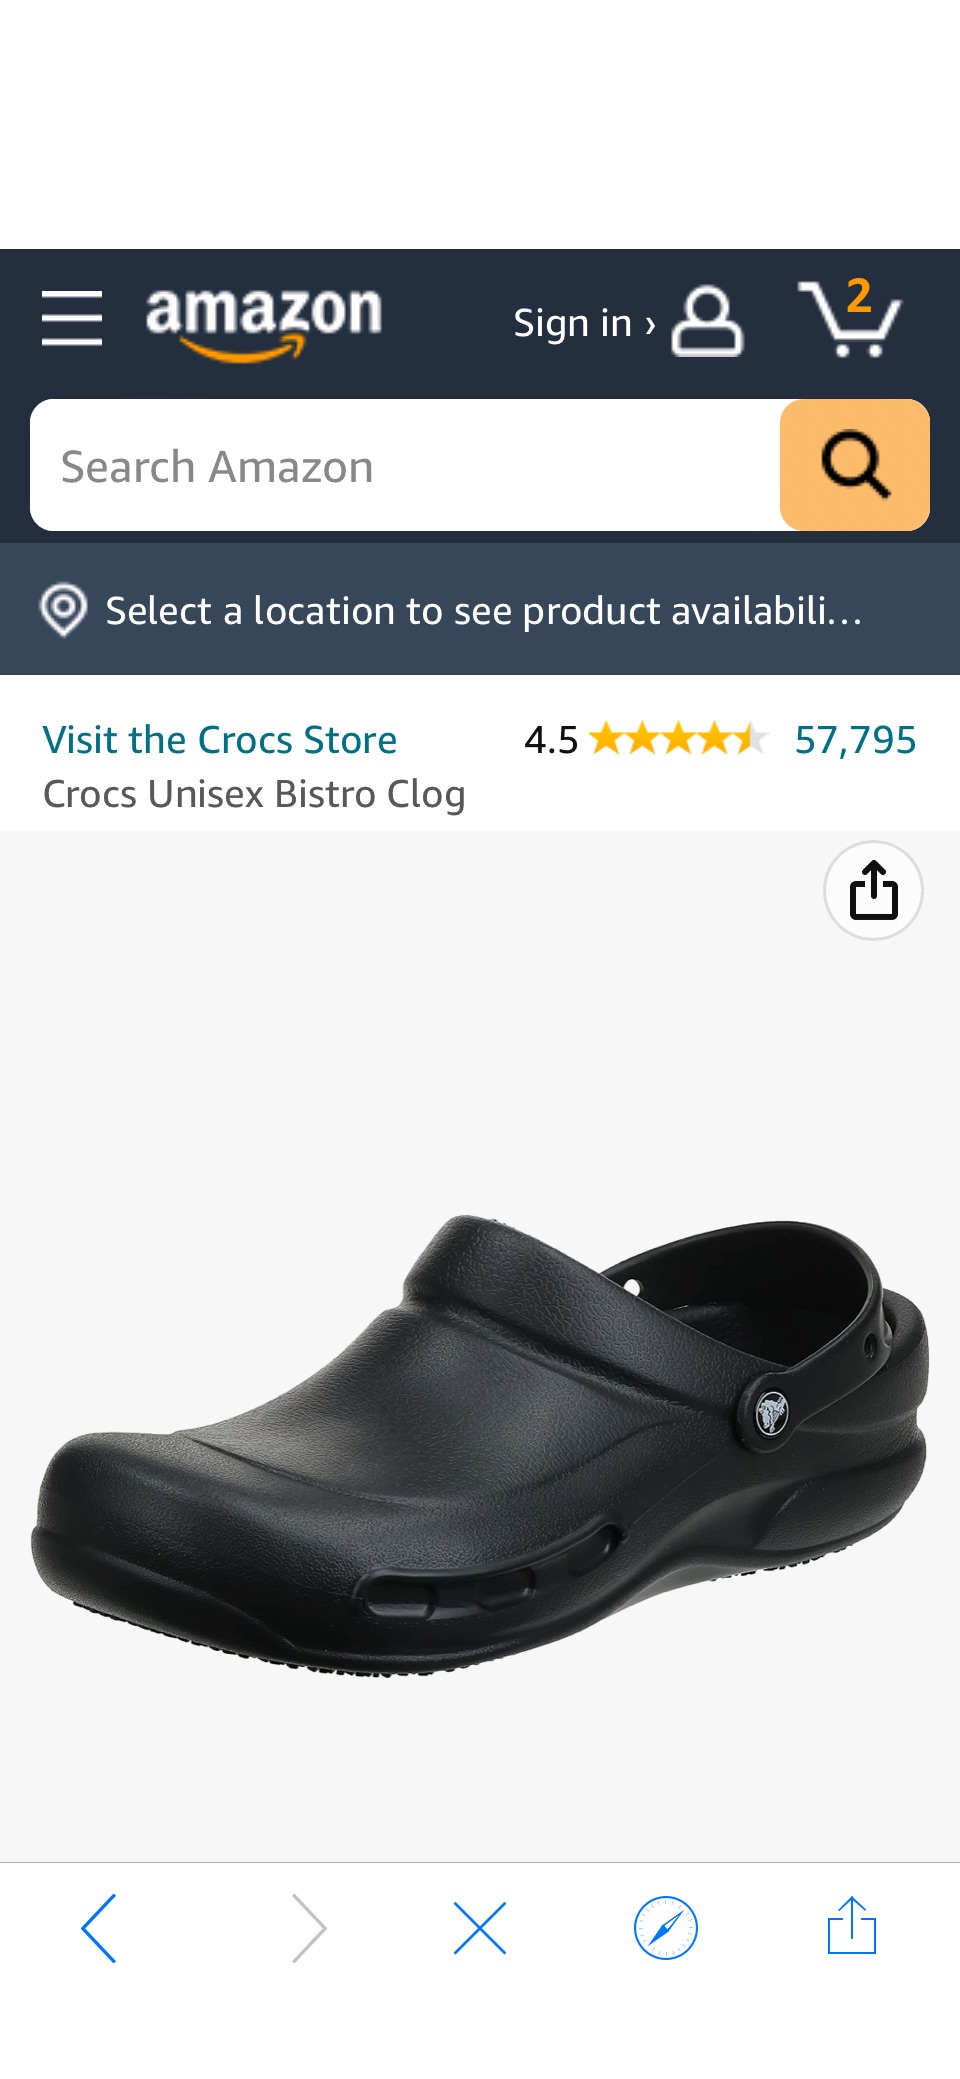 Amazon.com | Crocs Unisex Adult Men's and Women's Bistro Clog | Slip Resistant Work Shoes, Black, 10 Women 8 Men US | Mules & Clogs原价44.99